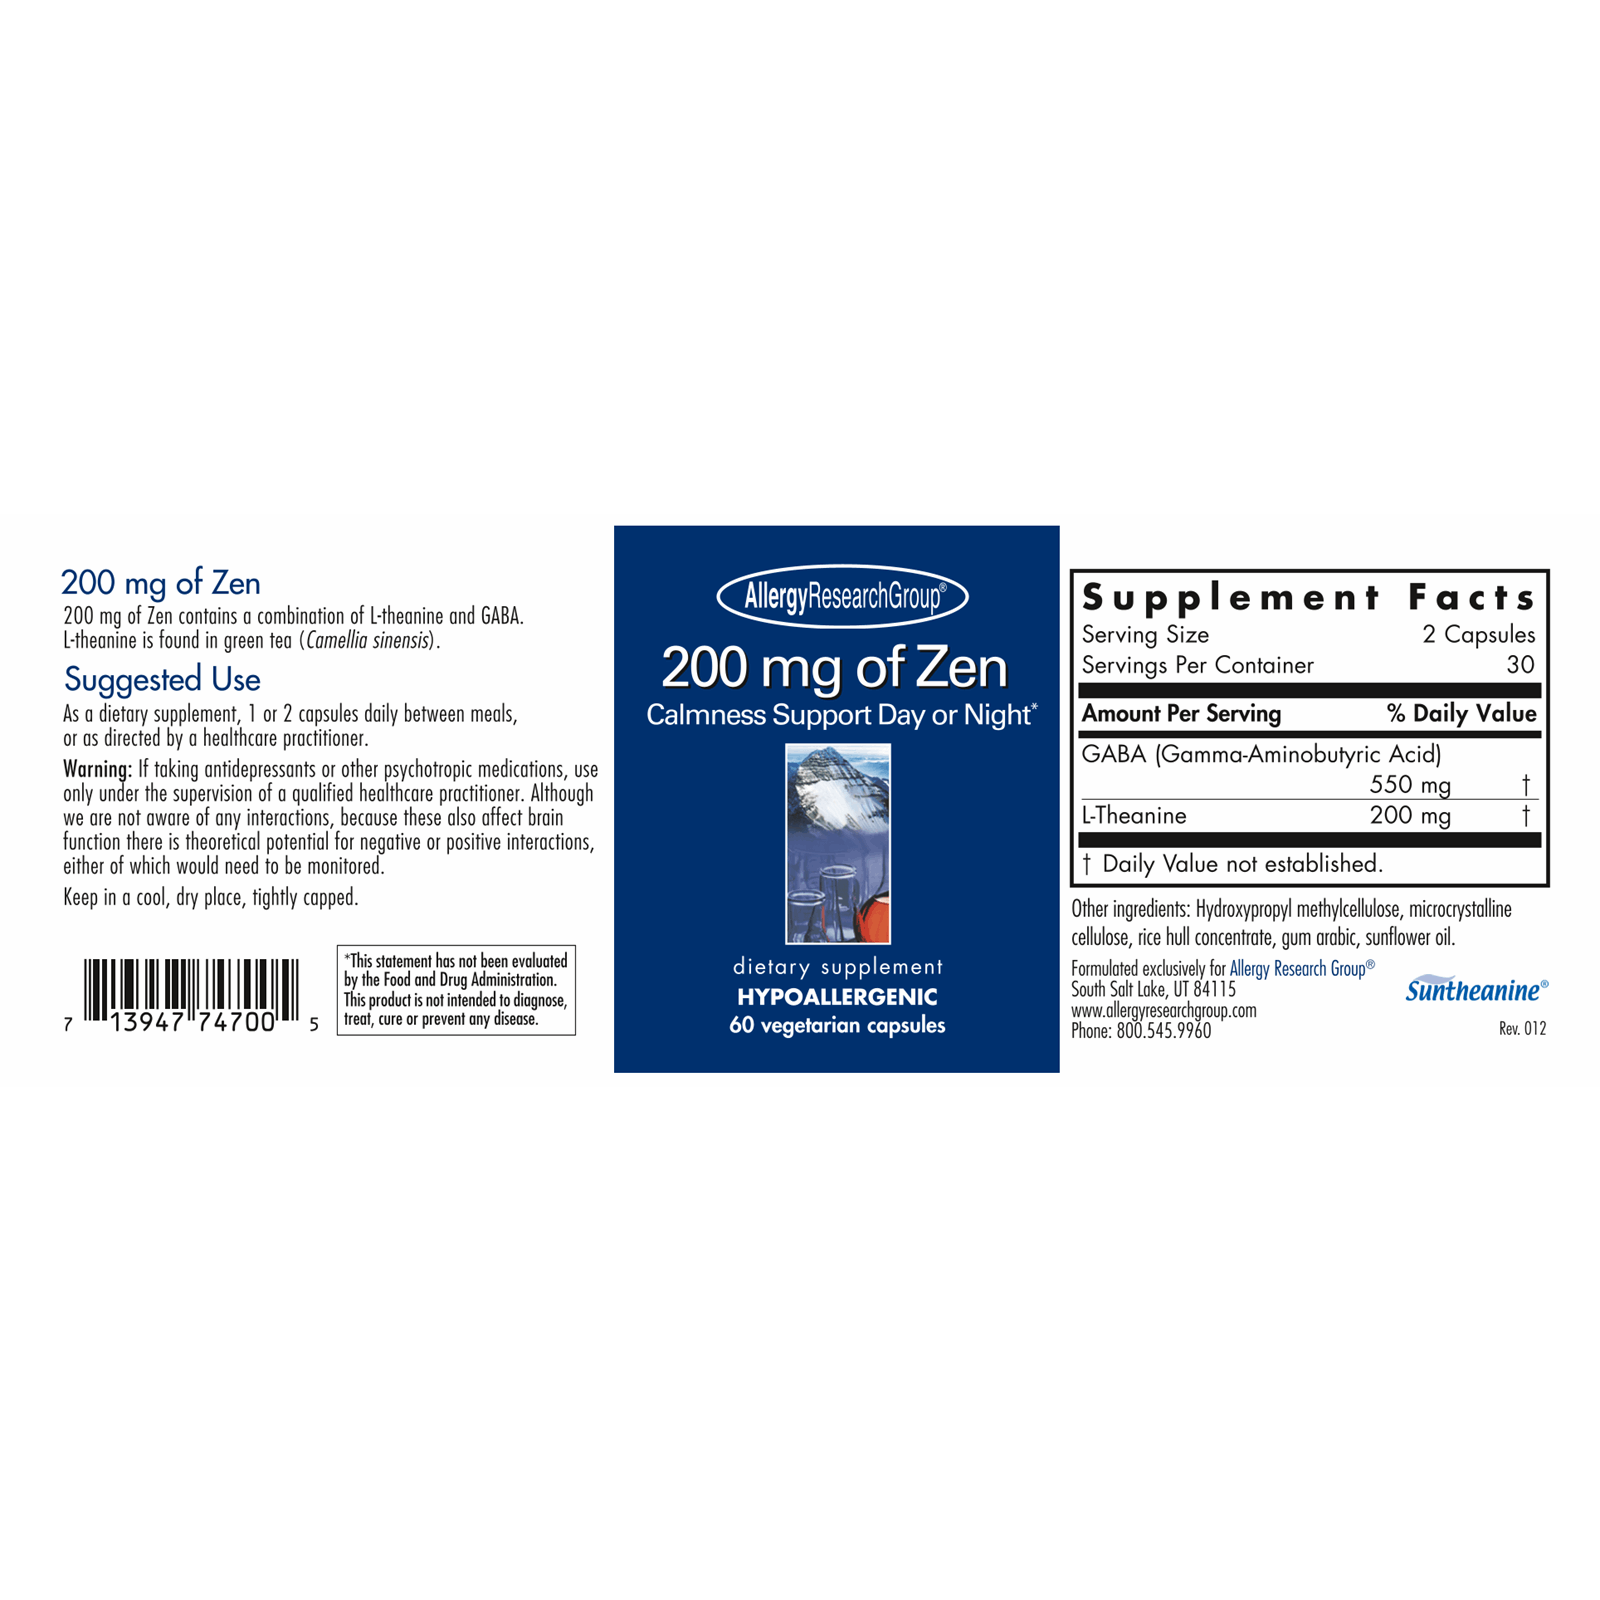 200 mg of Zen - littlehealthstore